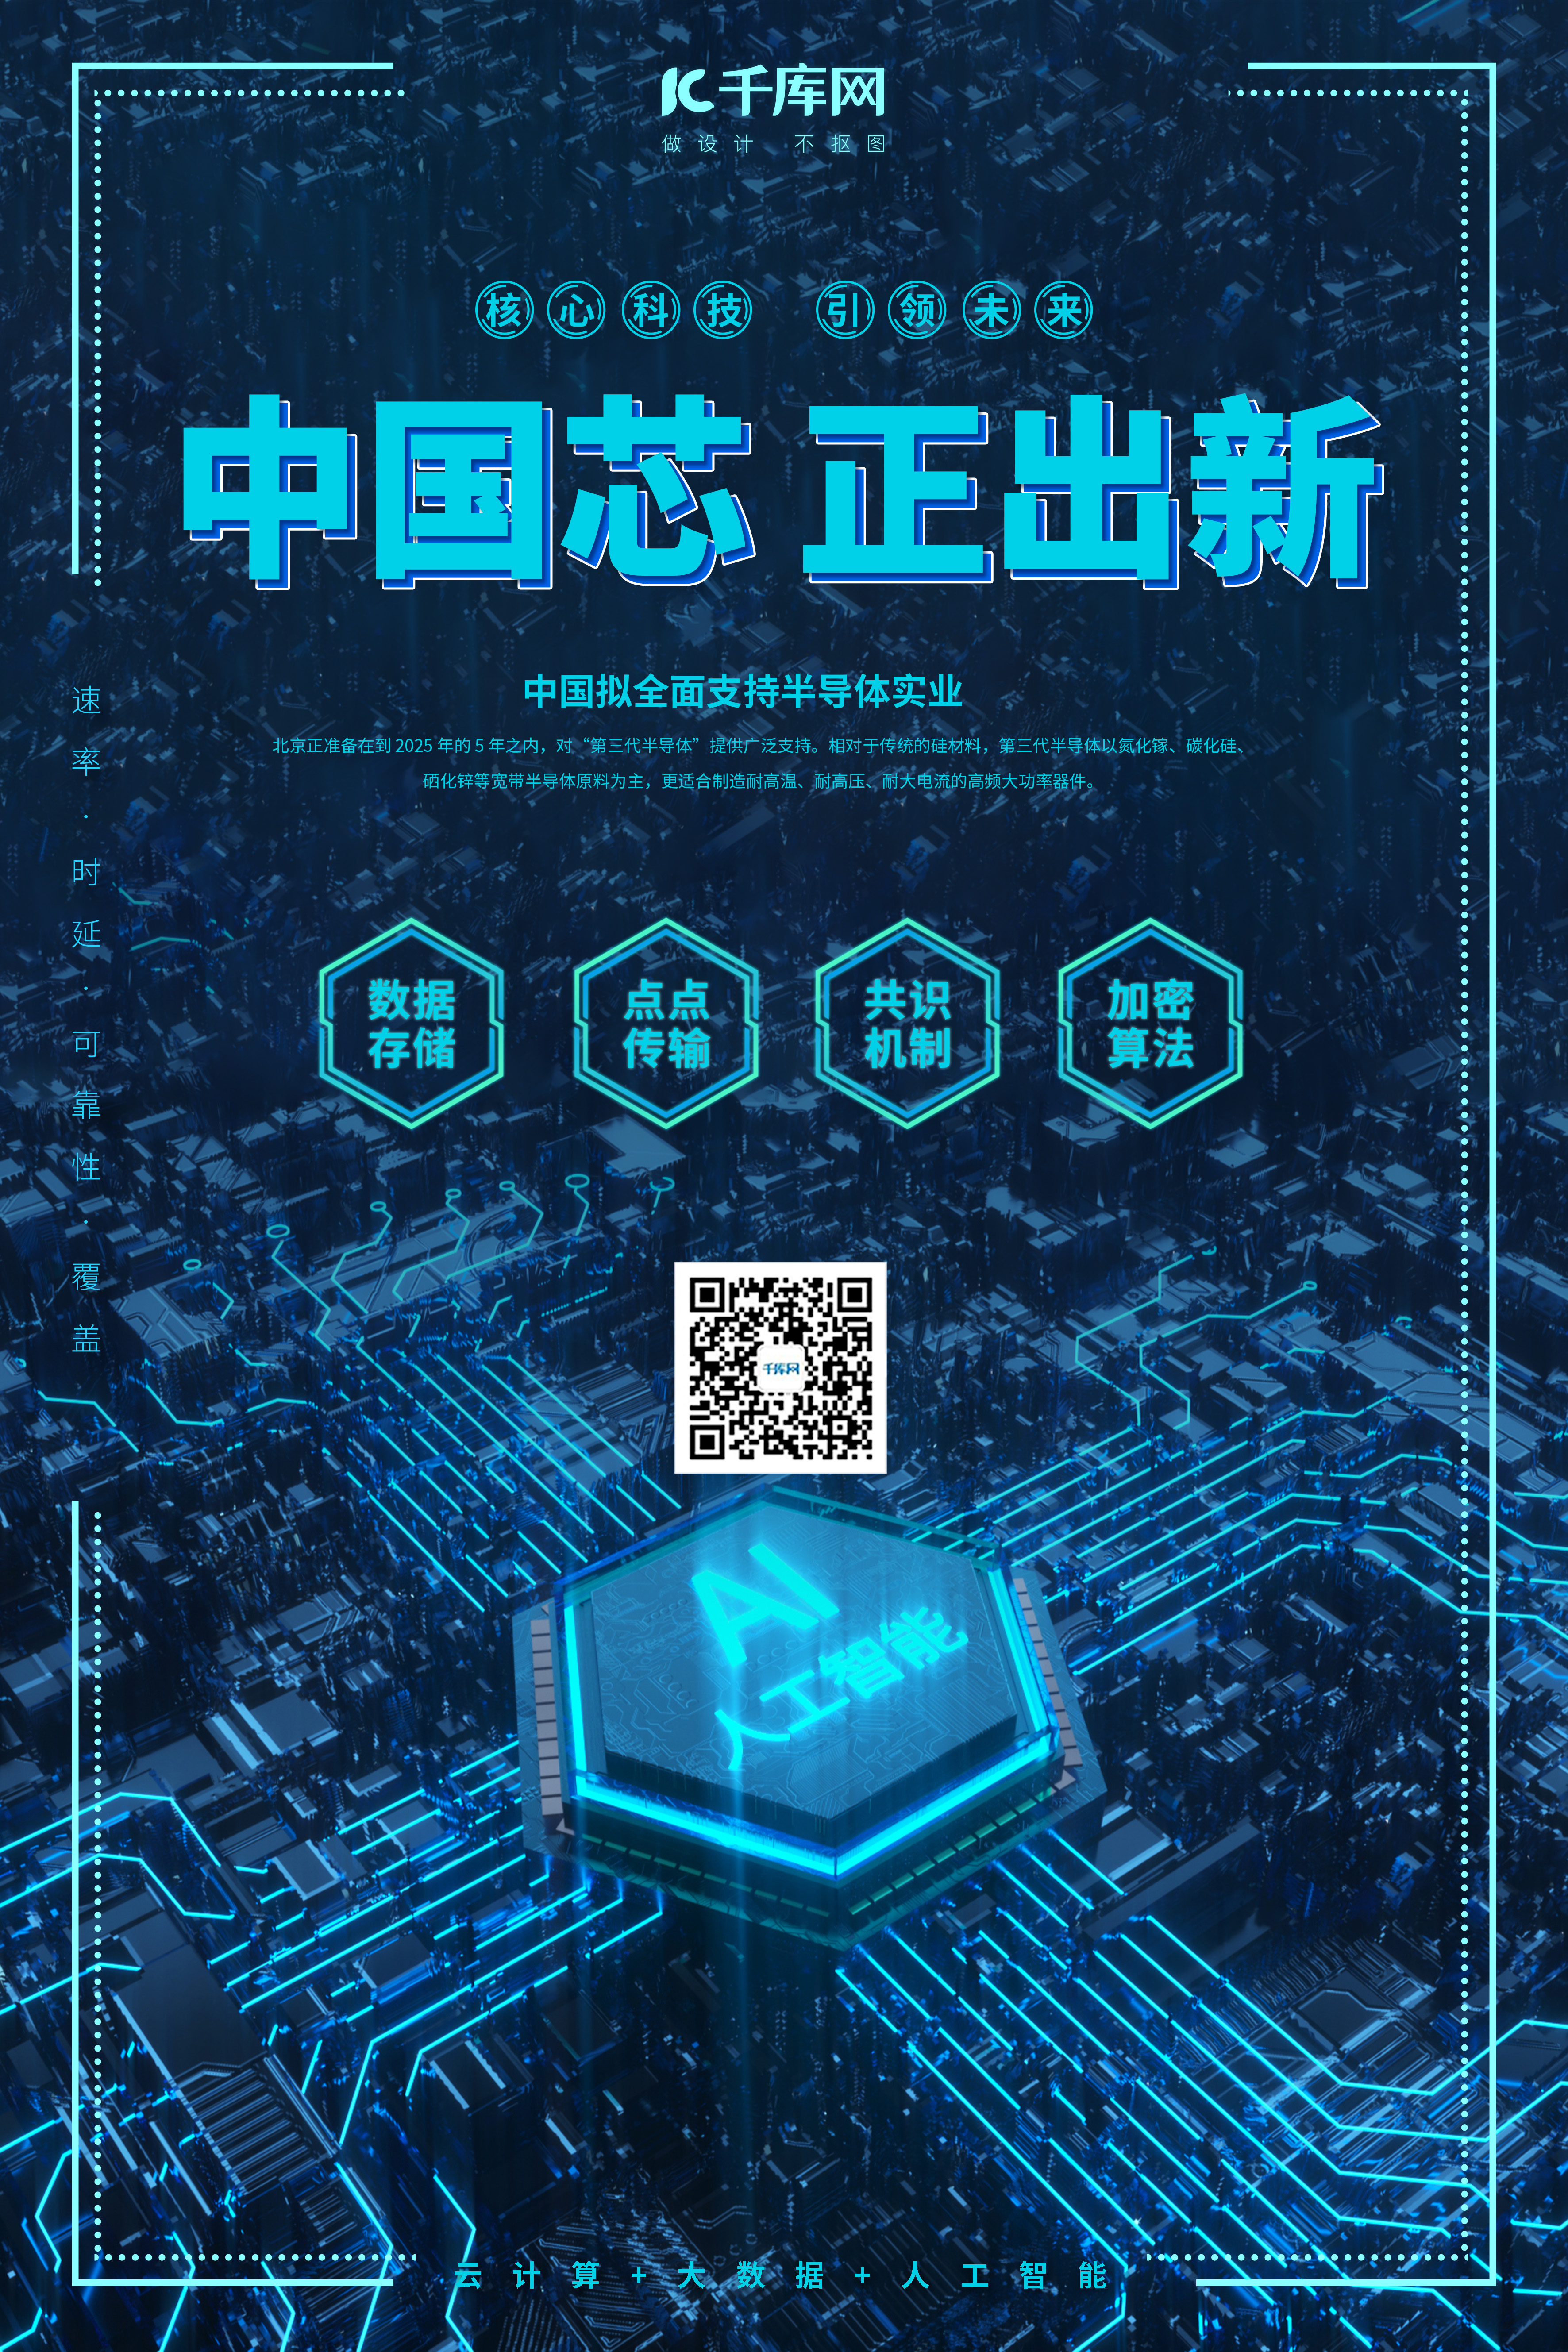 芯片中国芯正出新蓝色科技风海报图片